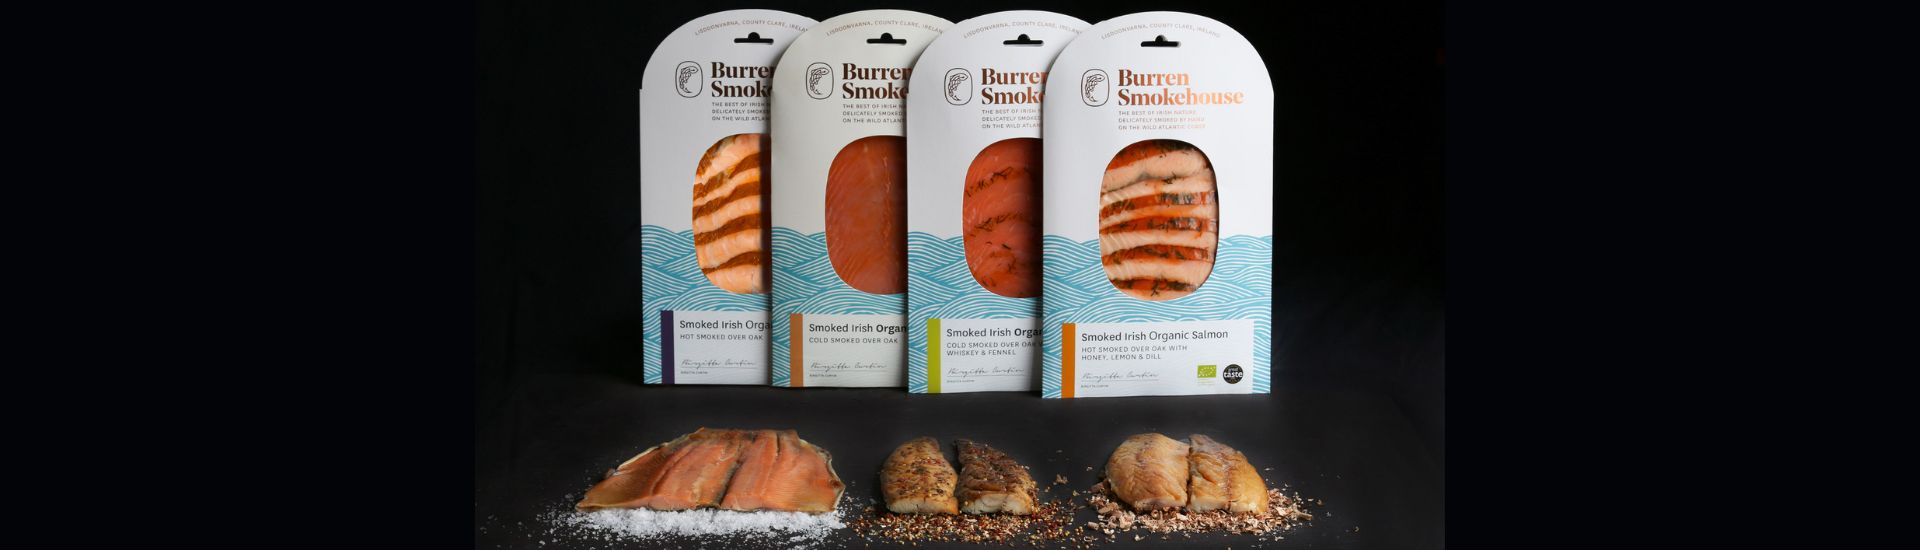 Burren Smokehouse smoked salmon Taste selections